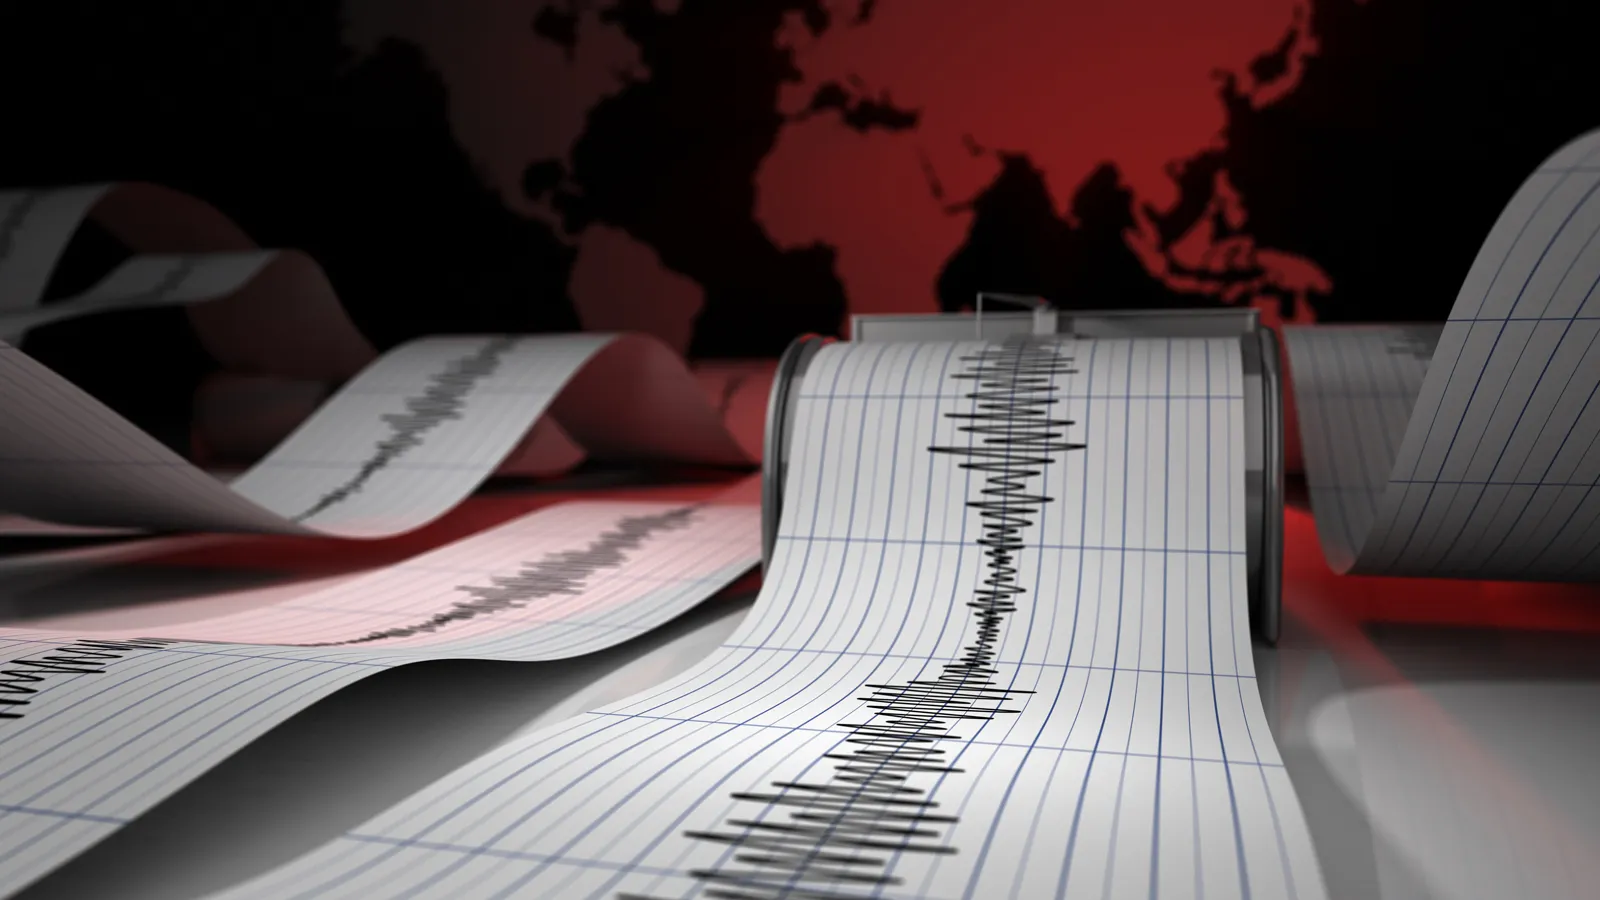 Son dakika şiddetli deprem oldu! AFAD ve Kandilli duyurdu: İşte depremin şiddeti ve merkez üssü